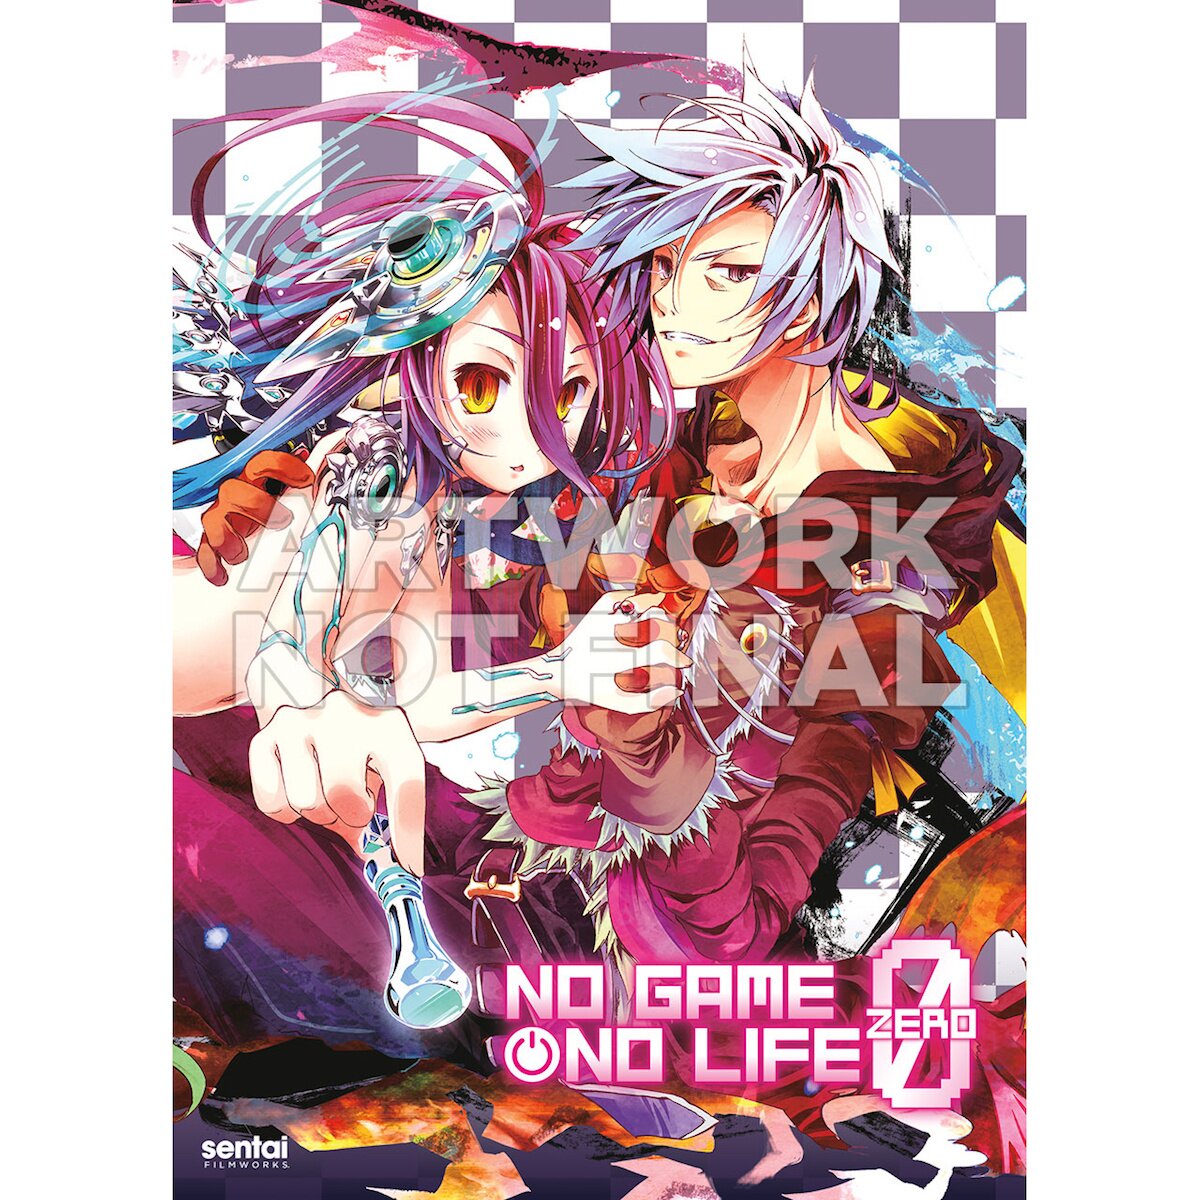 Anime Thoughts: No Game No Life: ZERO